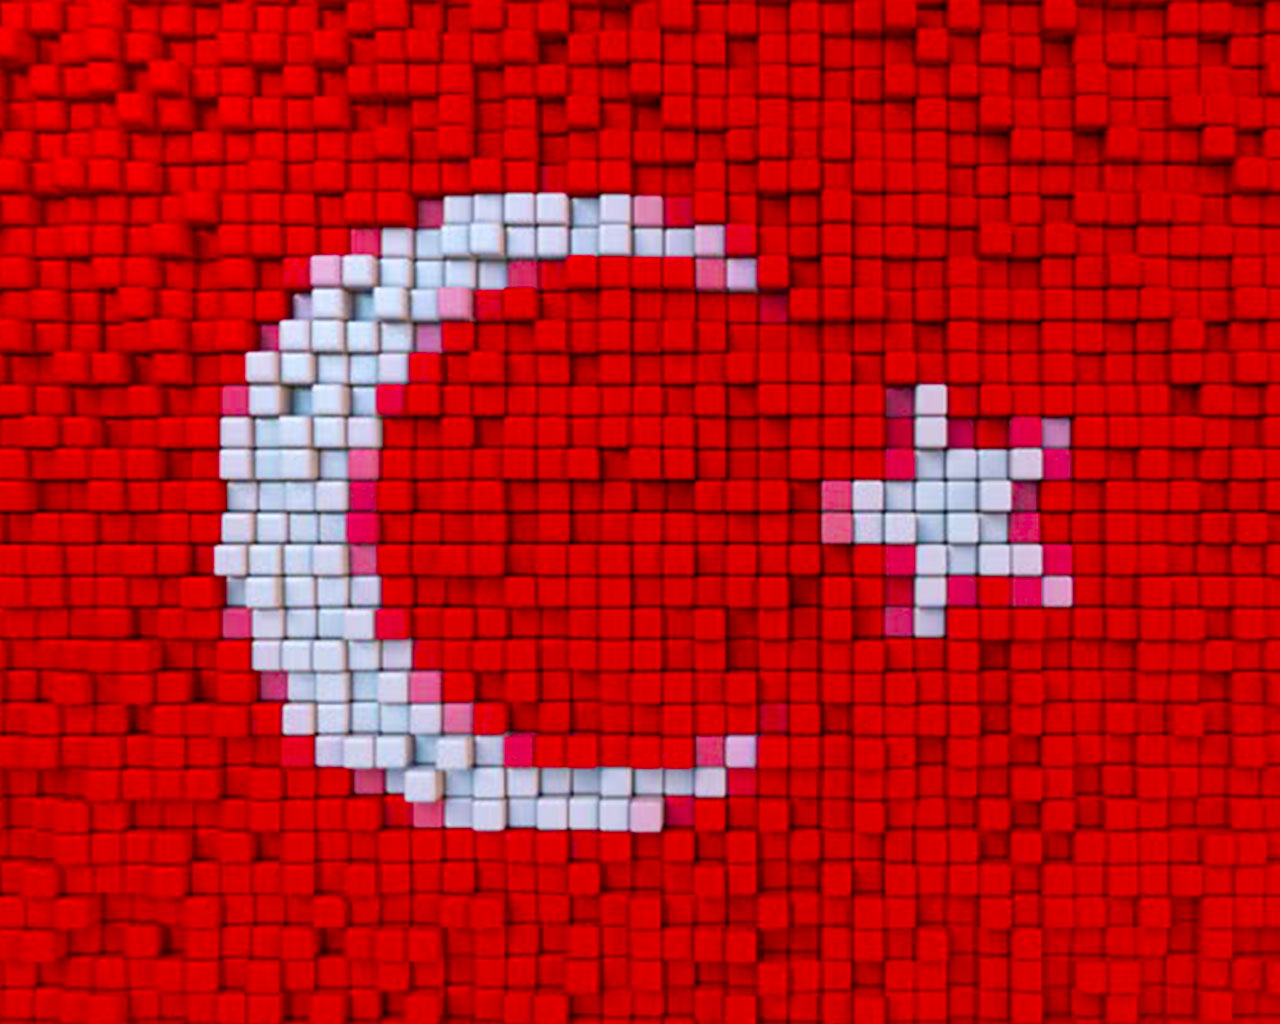 mozaik turk bayraklari 4